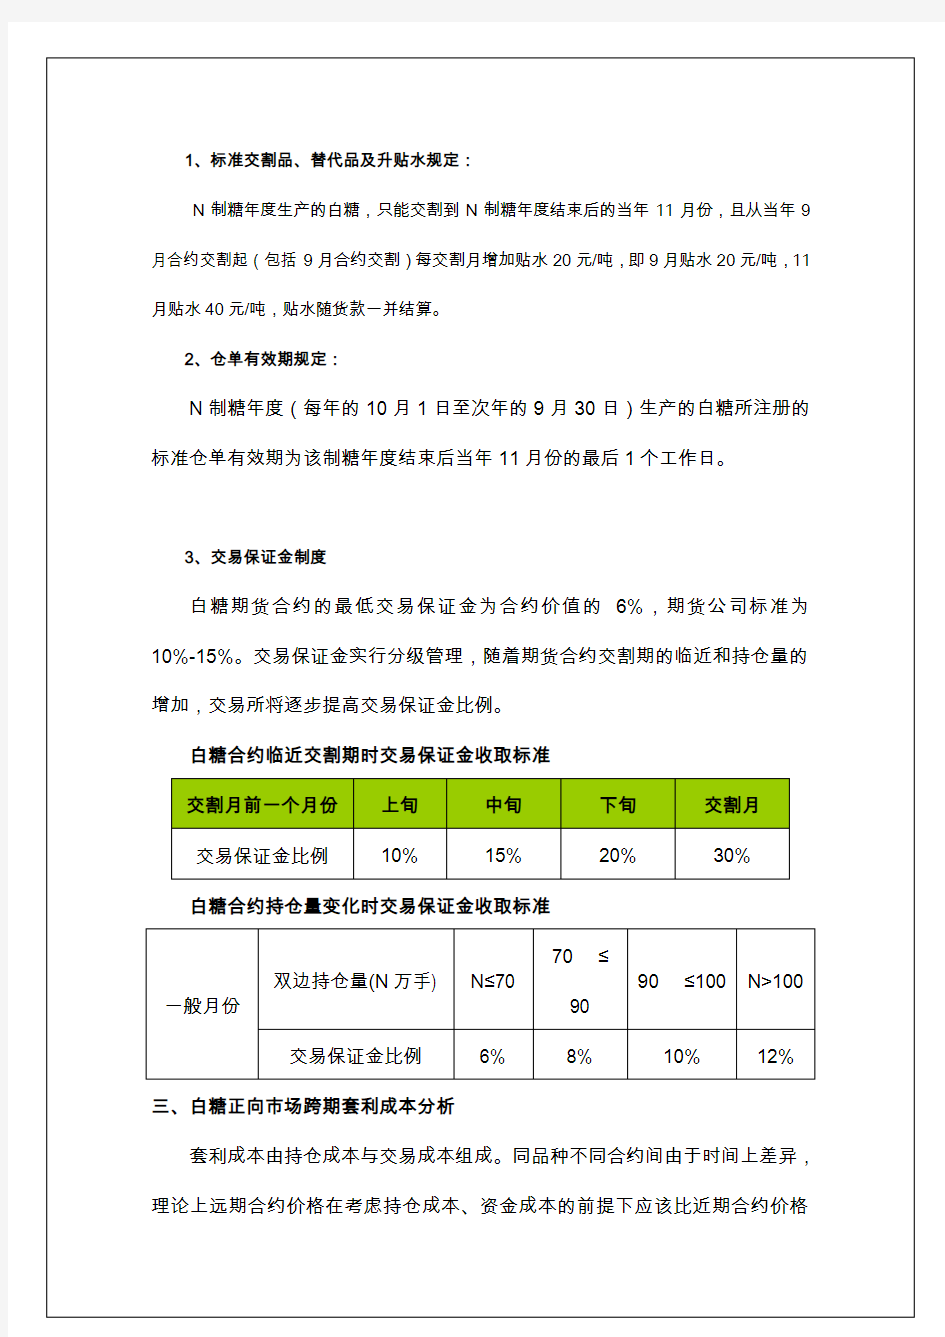 郑州白糖1005合约与1009合约正向套利机会分析